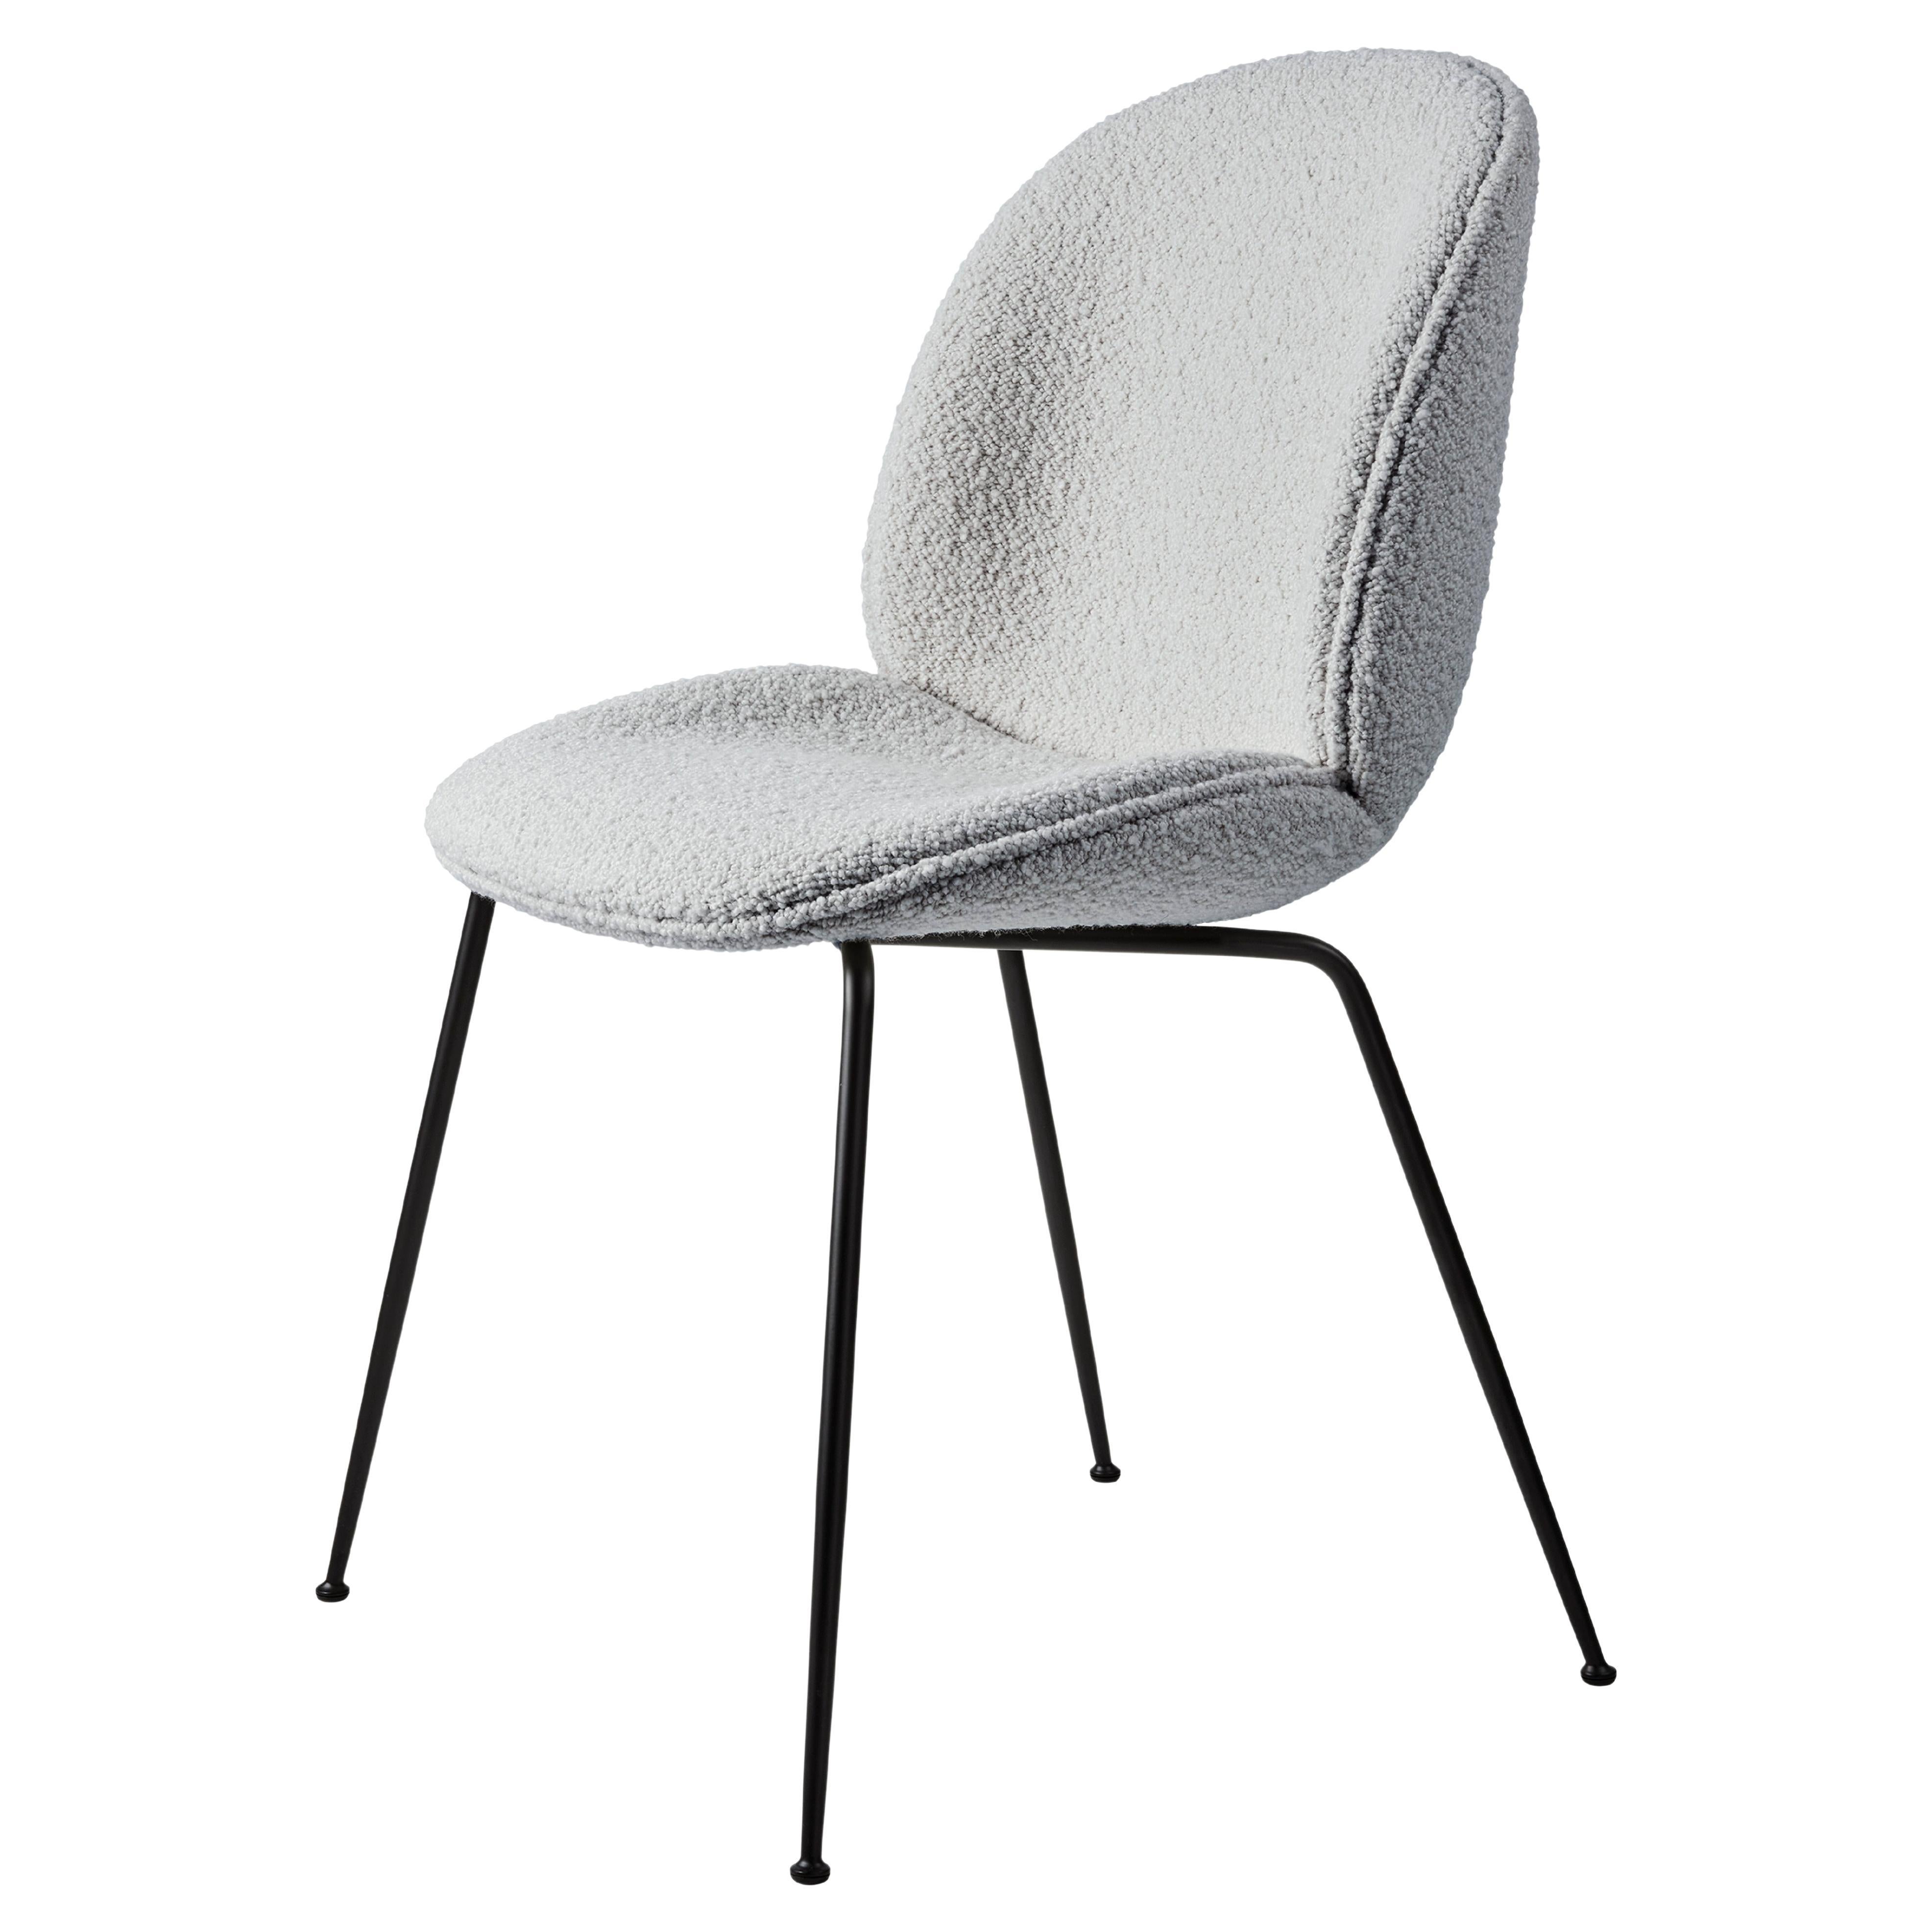 Beetle Dining Chair-Fully Upholstered-Karakorum004/ Black Matt Base-GamFratesi  For Sale